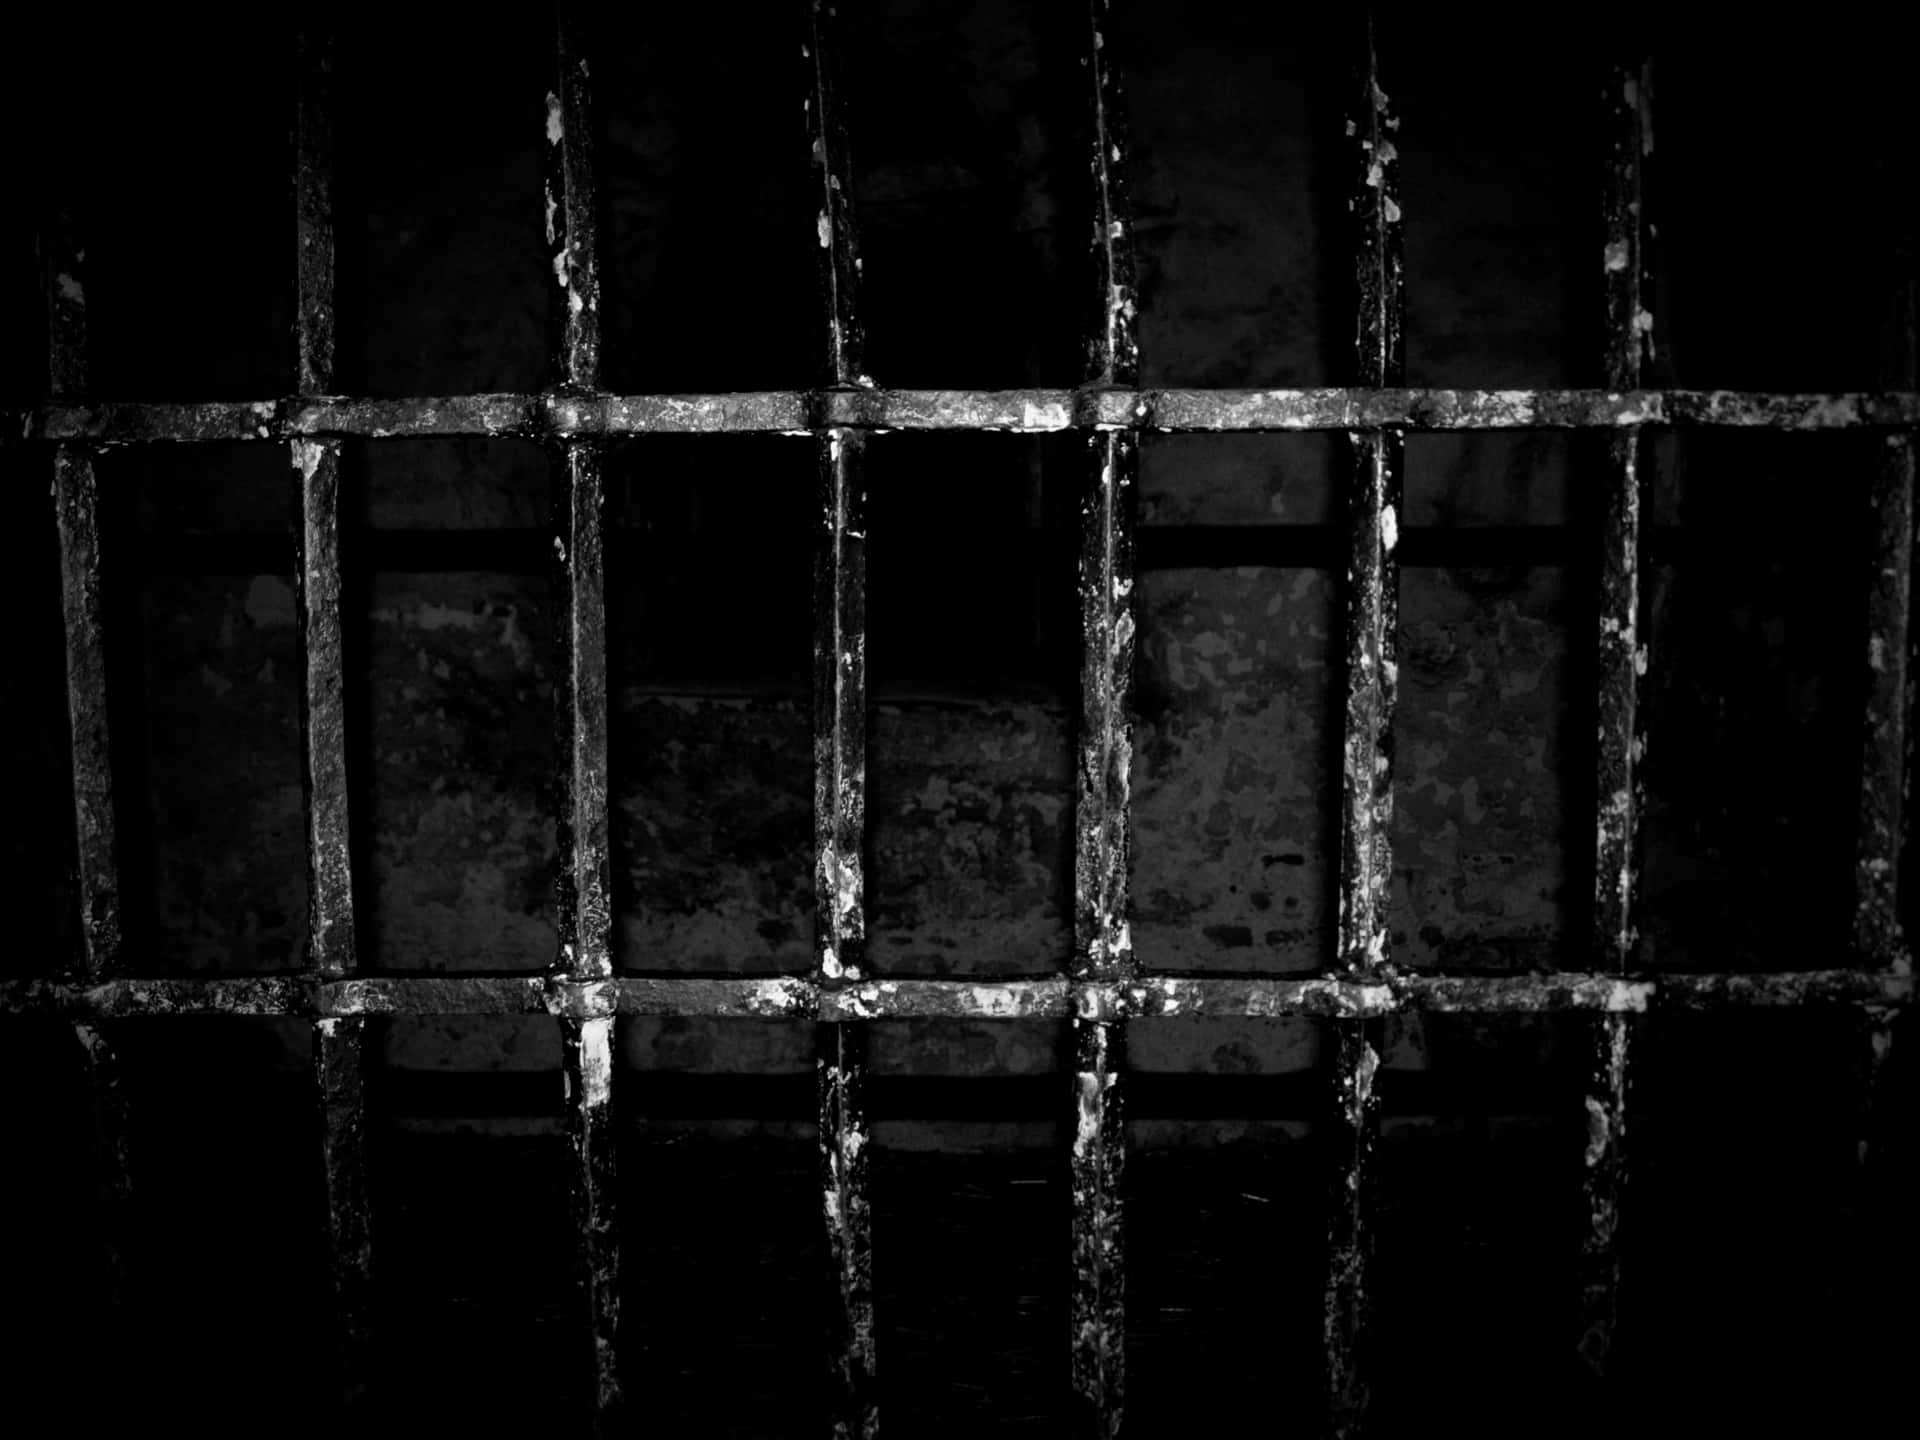 Etsort-hvidt Billede Af En Fængselscelle.